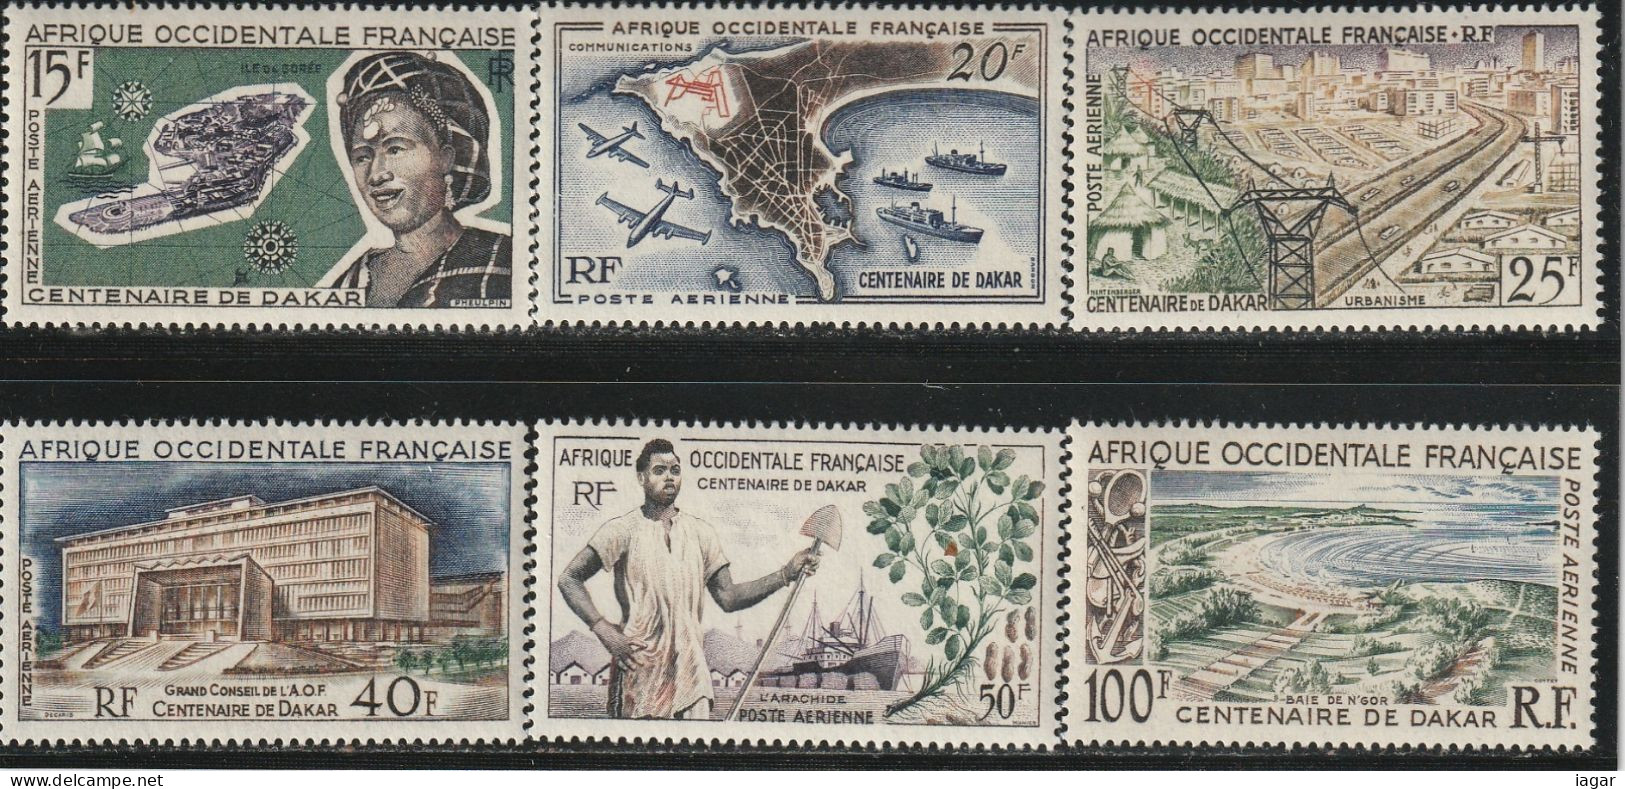 AFRIQUE OCCIDENTALE Française 1958  -  CENTENAIRE DE DAKAR, SUJETS DIVERS  6v - Autres - Afrique